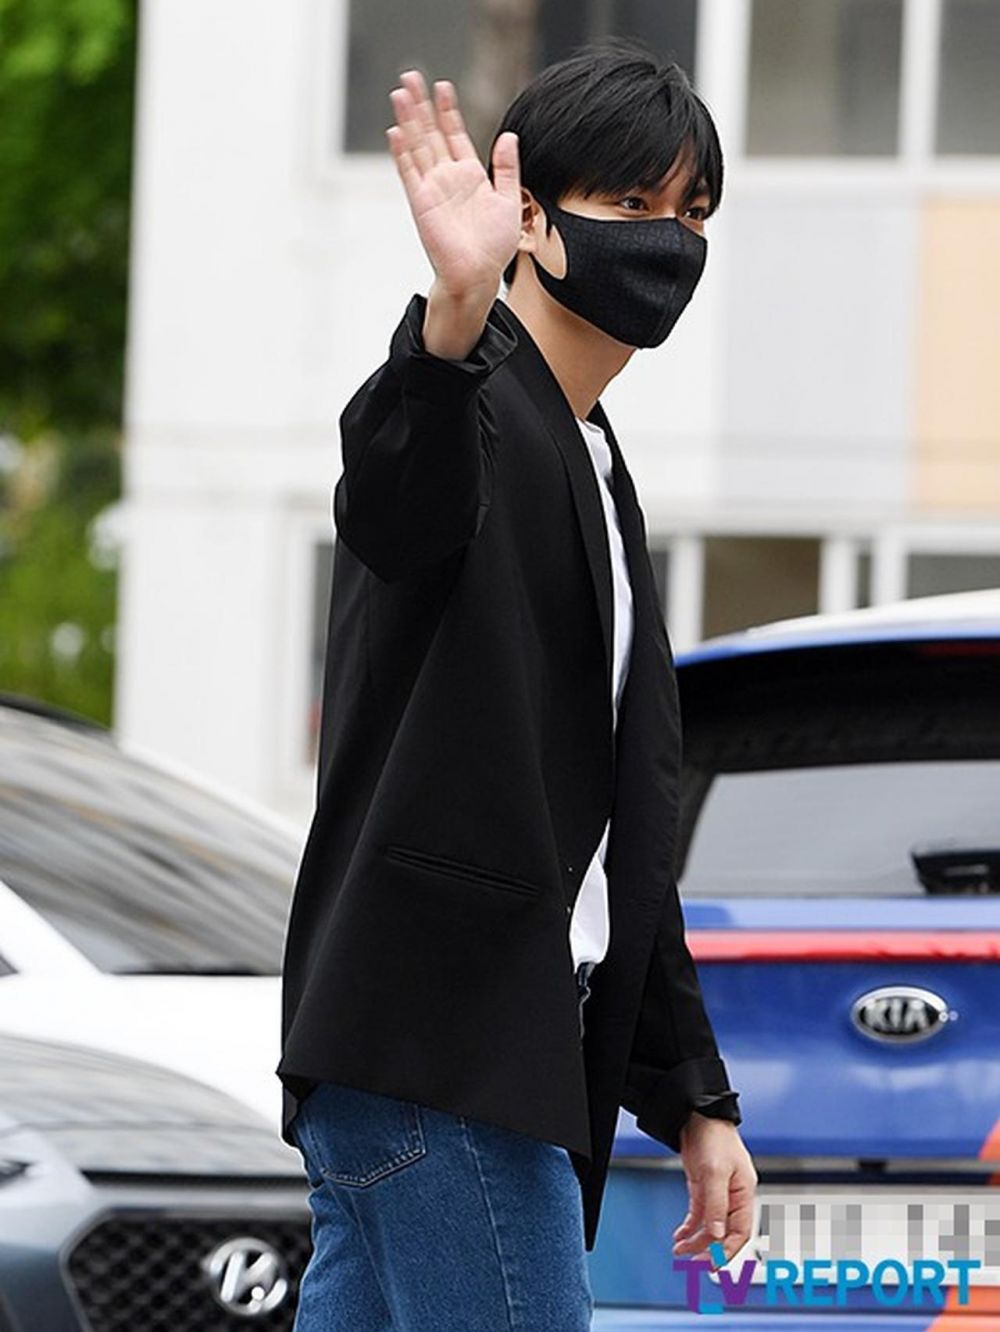 Unggah foto selfie setelah wamil, wajah Lee Min-ho jadi sorotan